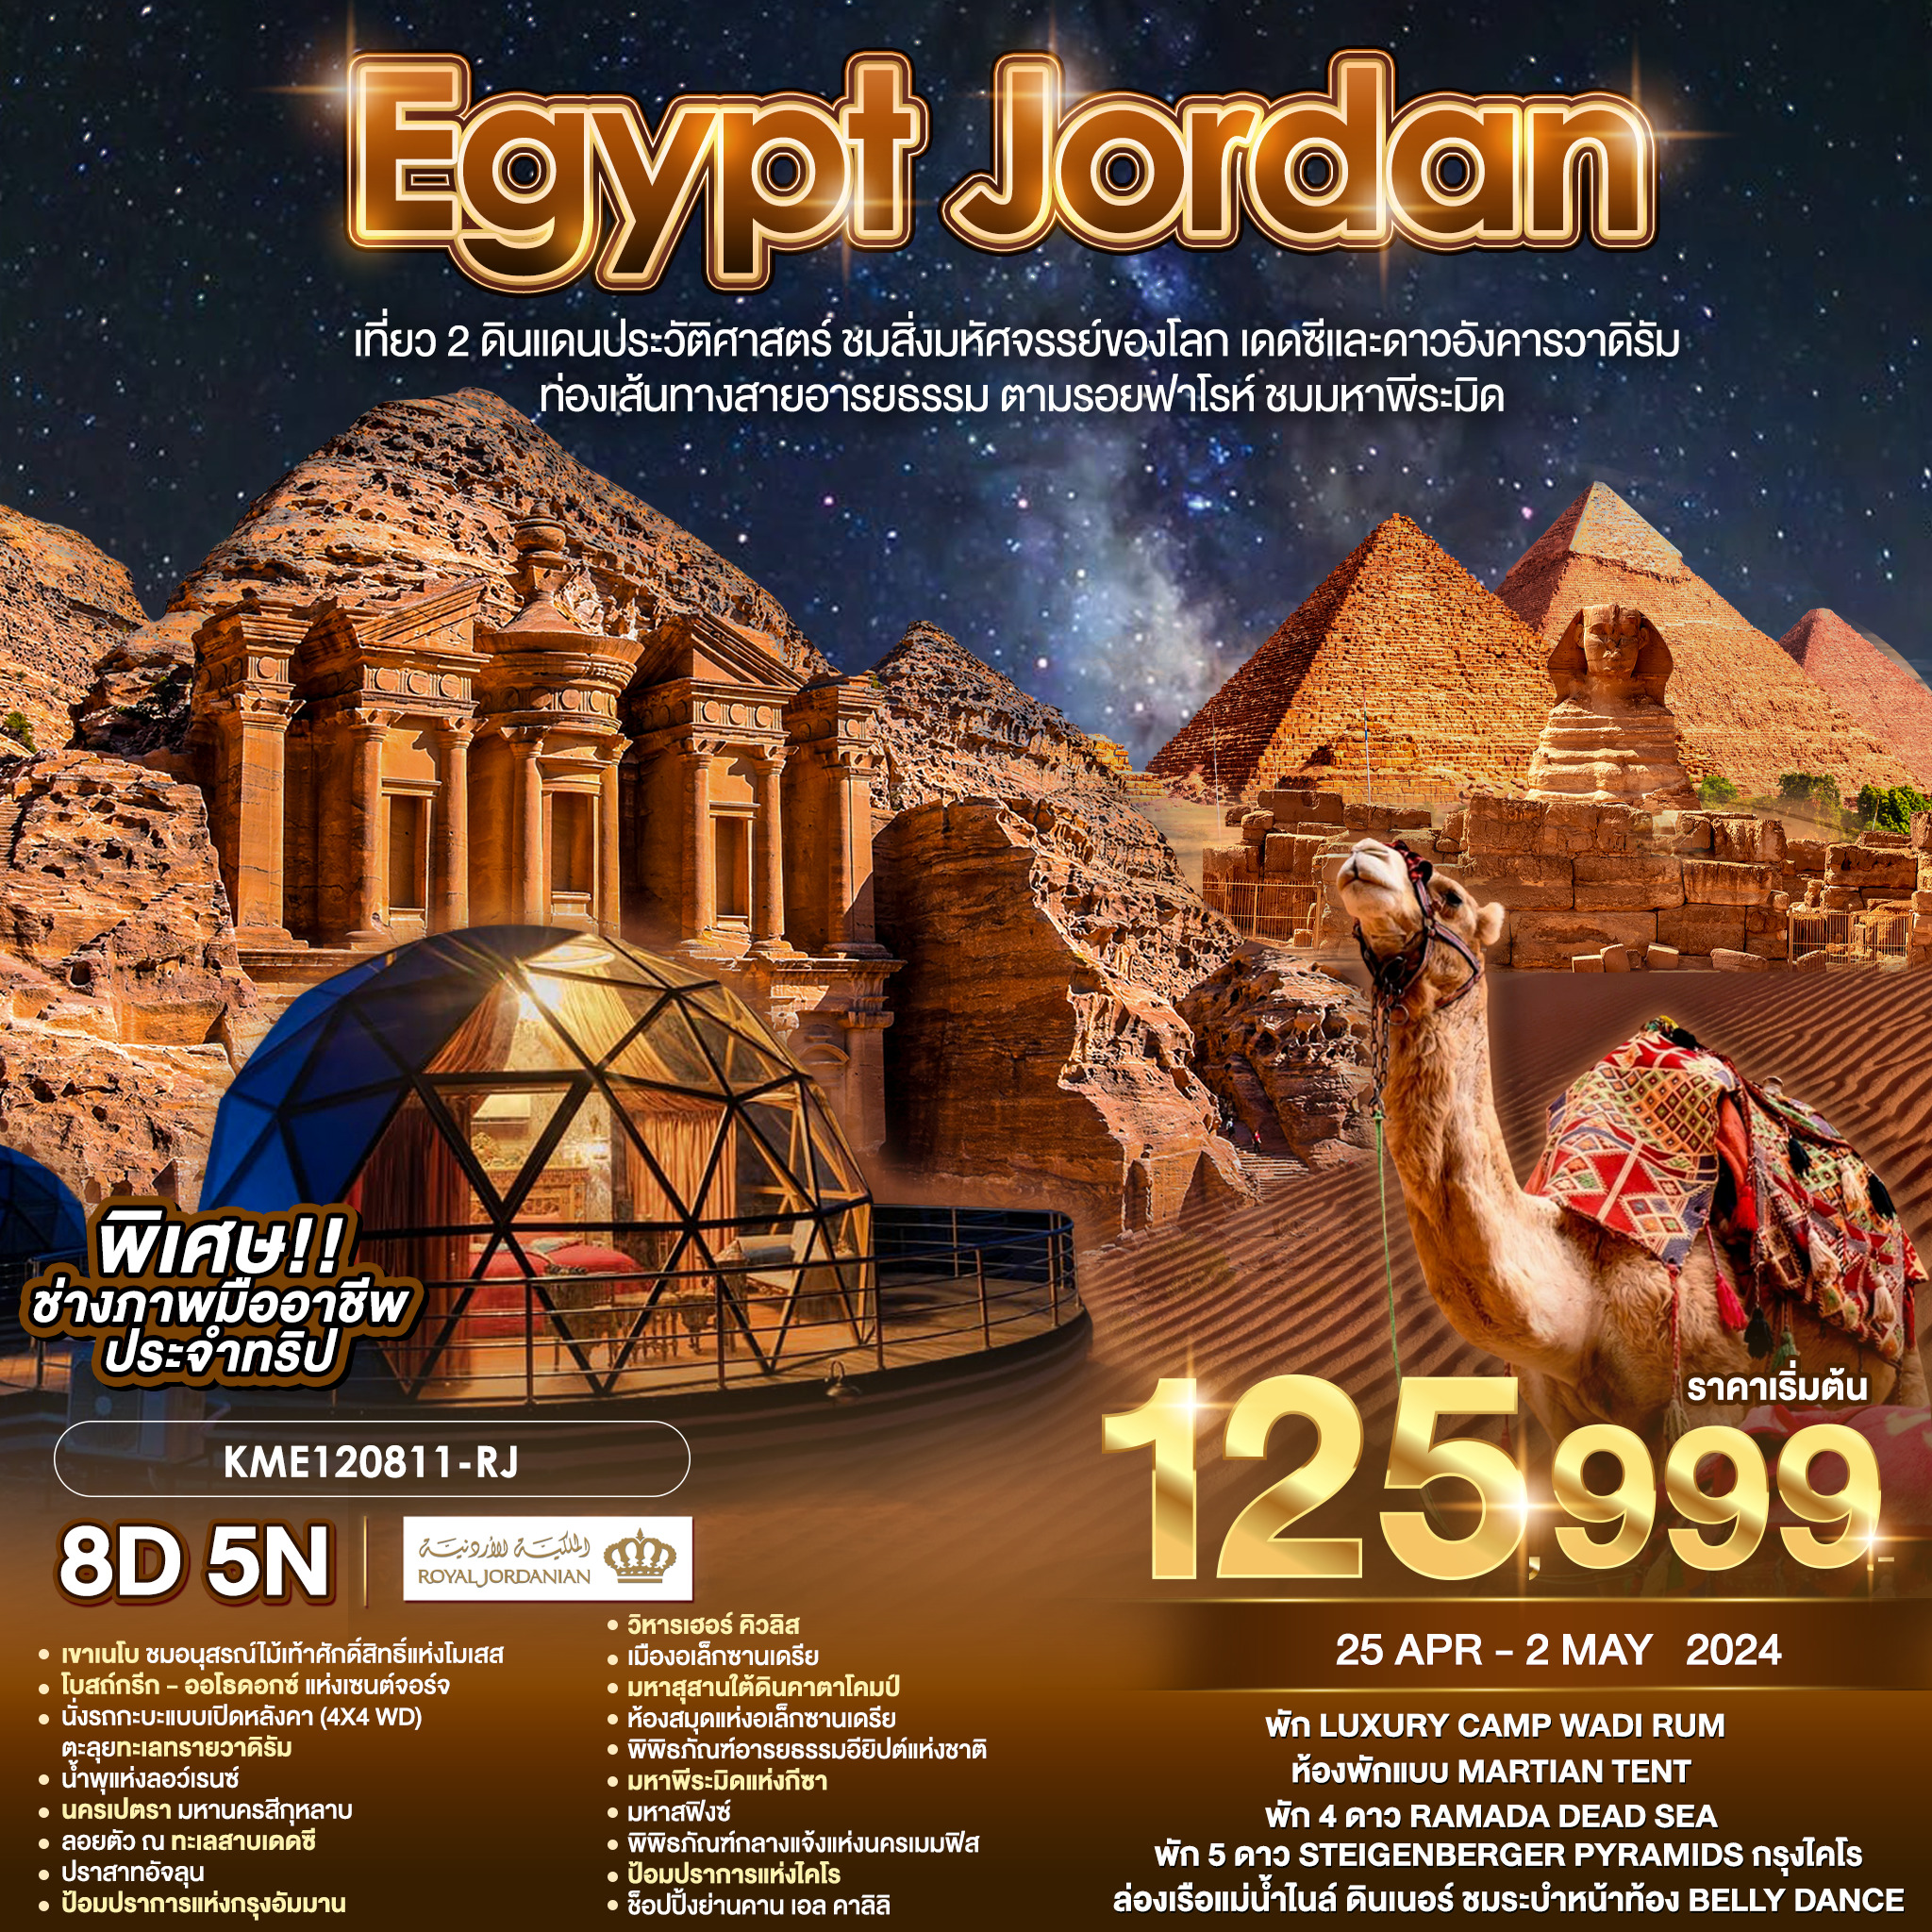 ทัวร์อียิปต์ EGYPT JORDAN 8วัน 5คืน (RJ)